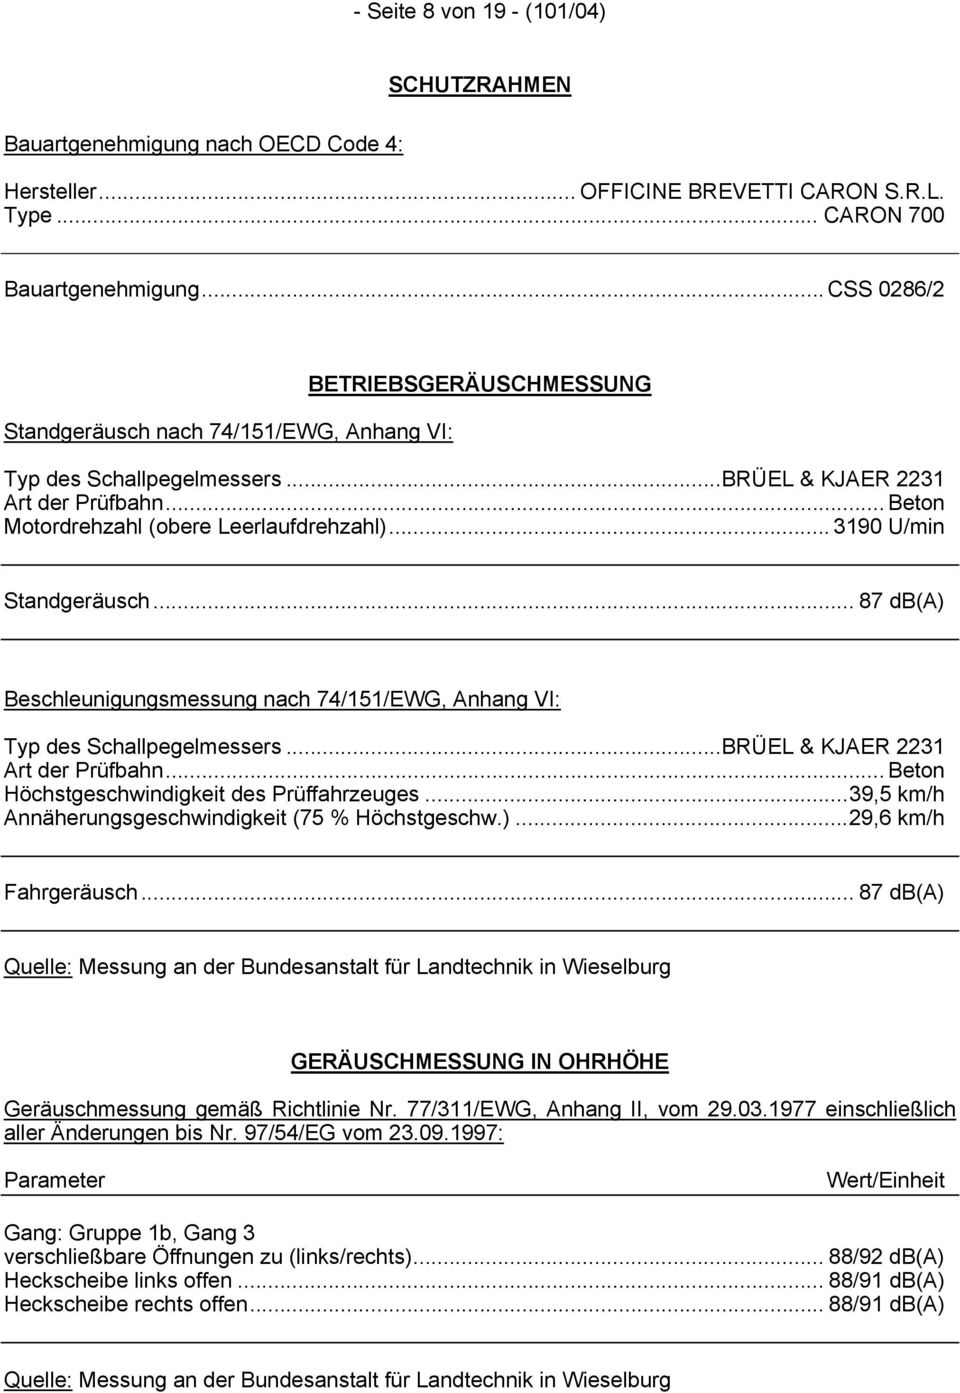 .. 3190 U/min Standgeräusch... 87 db(a) Beschleunigungsmessung nach 74/151/EWG, Anhang VI: Typ des Schallpegelmessers...BRÜEL & KJAER 2231 Art der Prüfbahn.